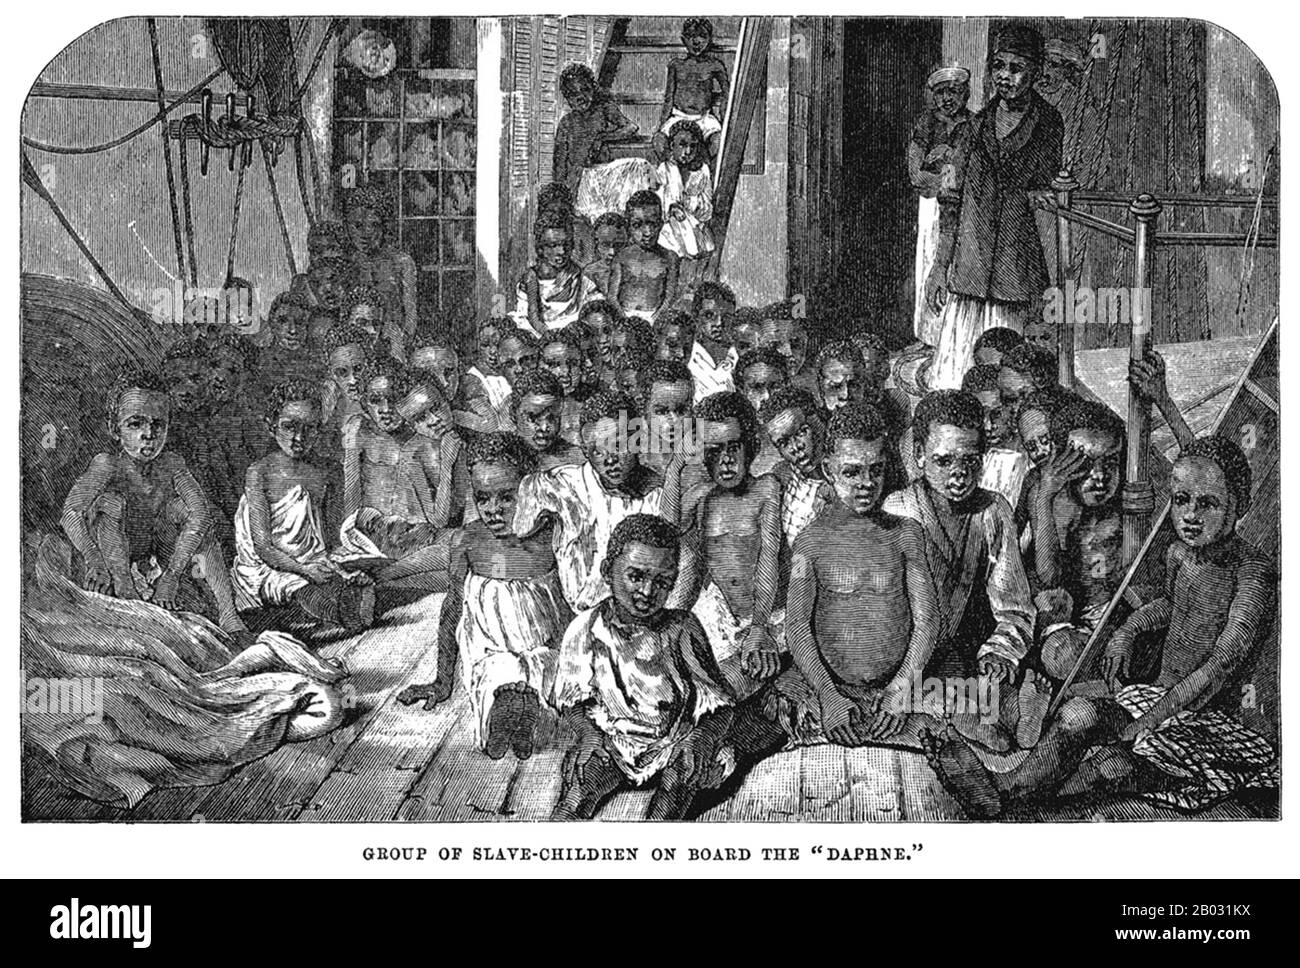 Diese Kinder sind einige der fünfundneunzig, die von einem britischen Schiff (der Daphne), das 1869 das Wasser vor Sansibar patrouillierte, aus der Sklaverei gerettet wurden. Nachdem das Parlament den Handel mit Sklaven abgeschafft hatte, wurden Schiffe der Royal Navy zugewiesen, um die Slaver abzufangen und die menschliche Ladung an Bord zu befreien. Während diese Gravur auf der Grundlage eines Fotos von George Sullivan die Bedingungen entlang Afrikas Ostufer darstellt, gab es dieselbe Situation auf der atlantischen Seite. Stockfoto